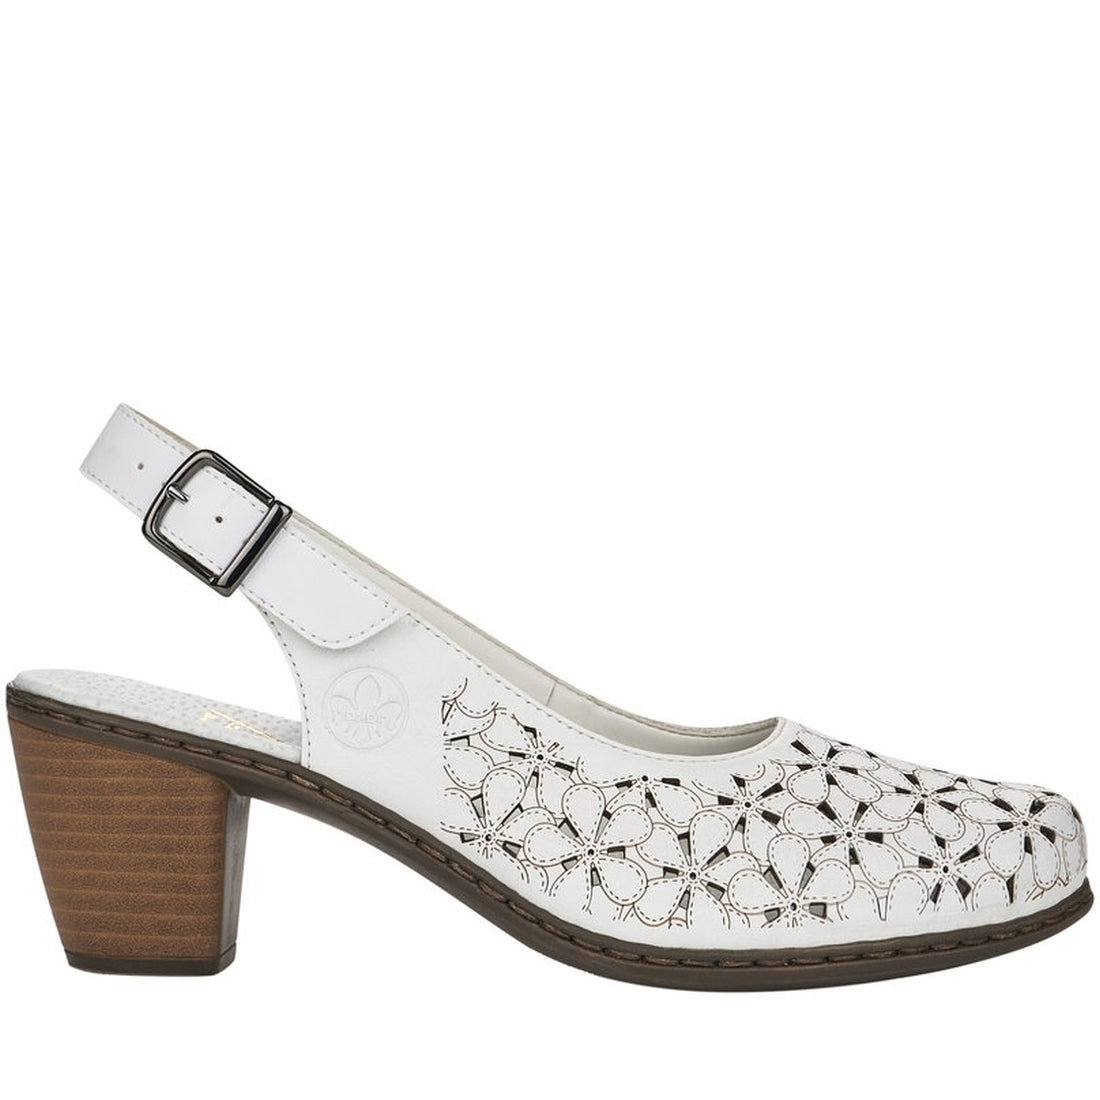 Rieker Womens hartweiss casual part-open sandals | Vilbury London